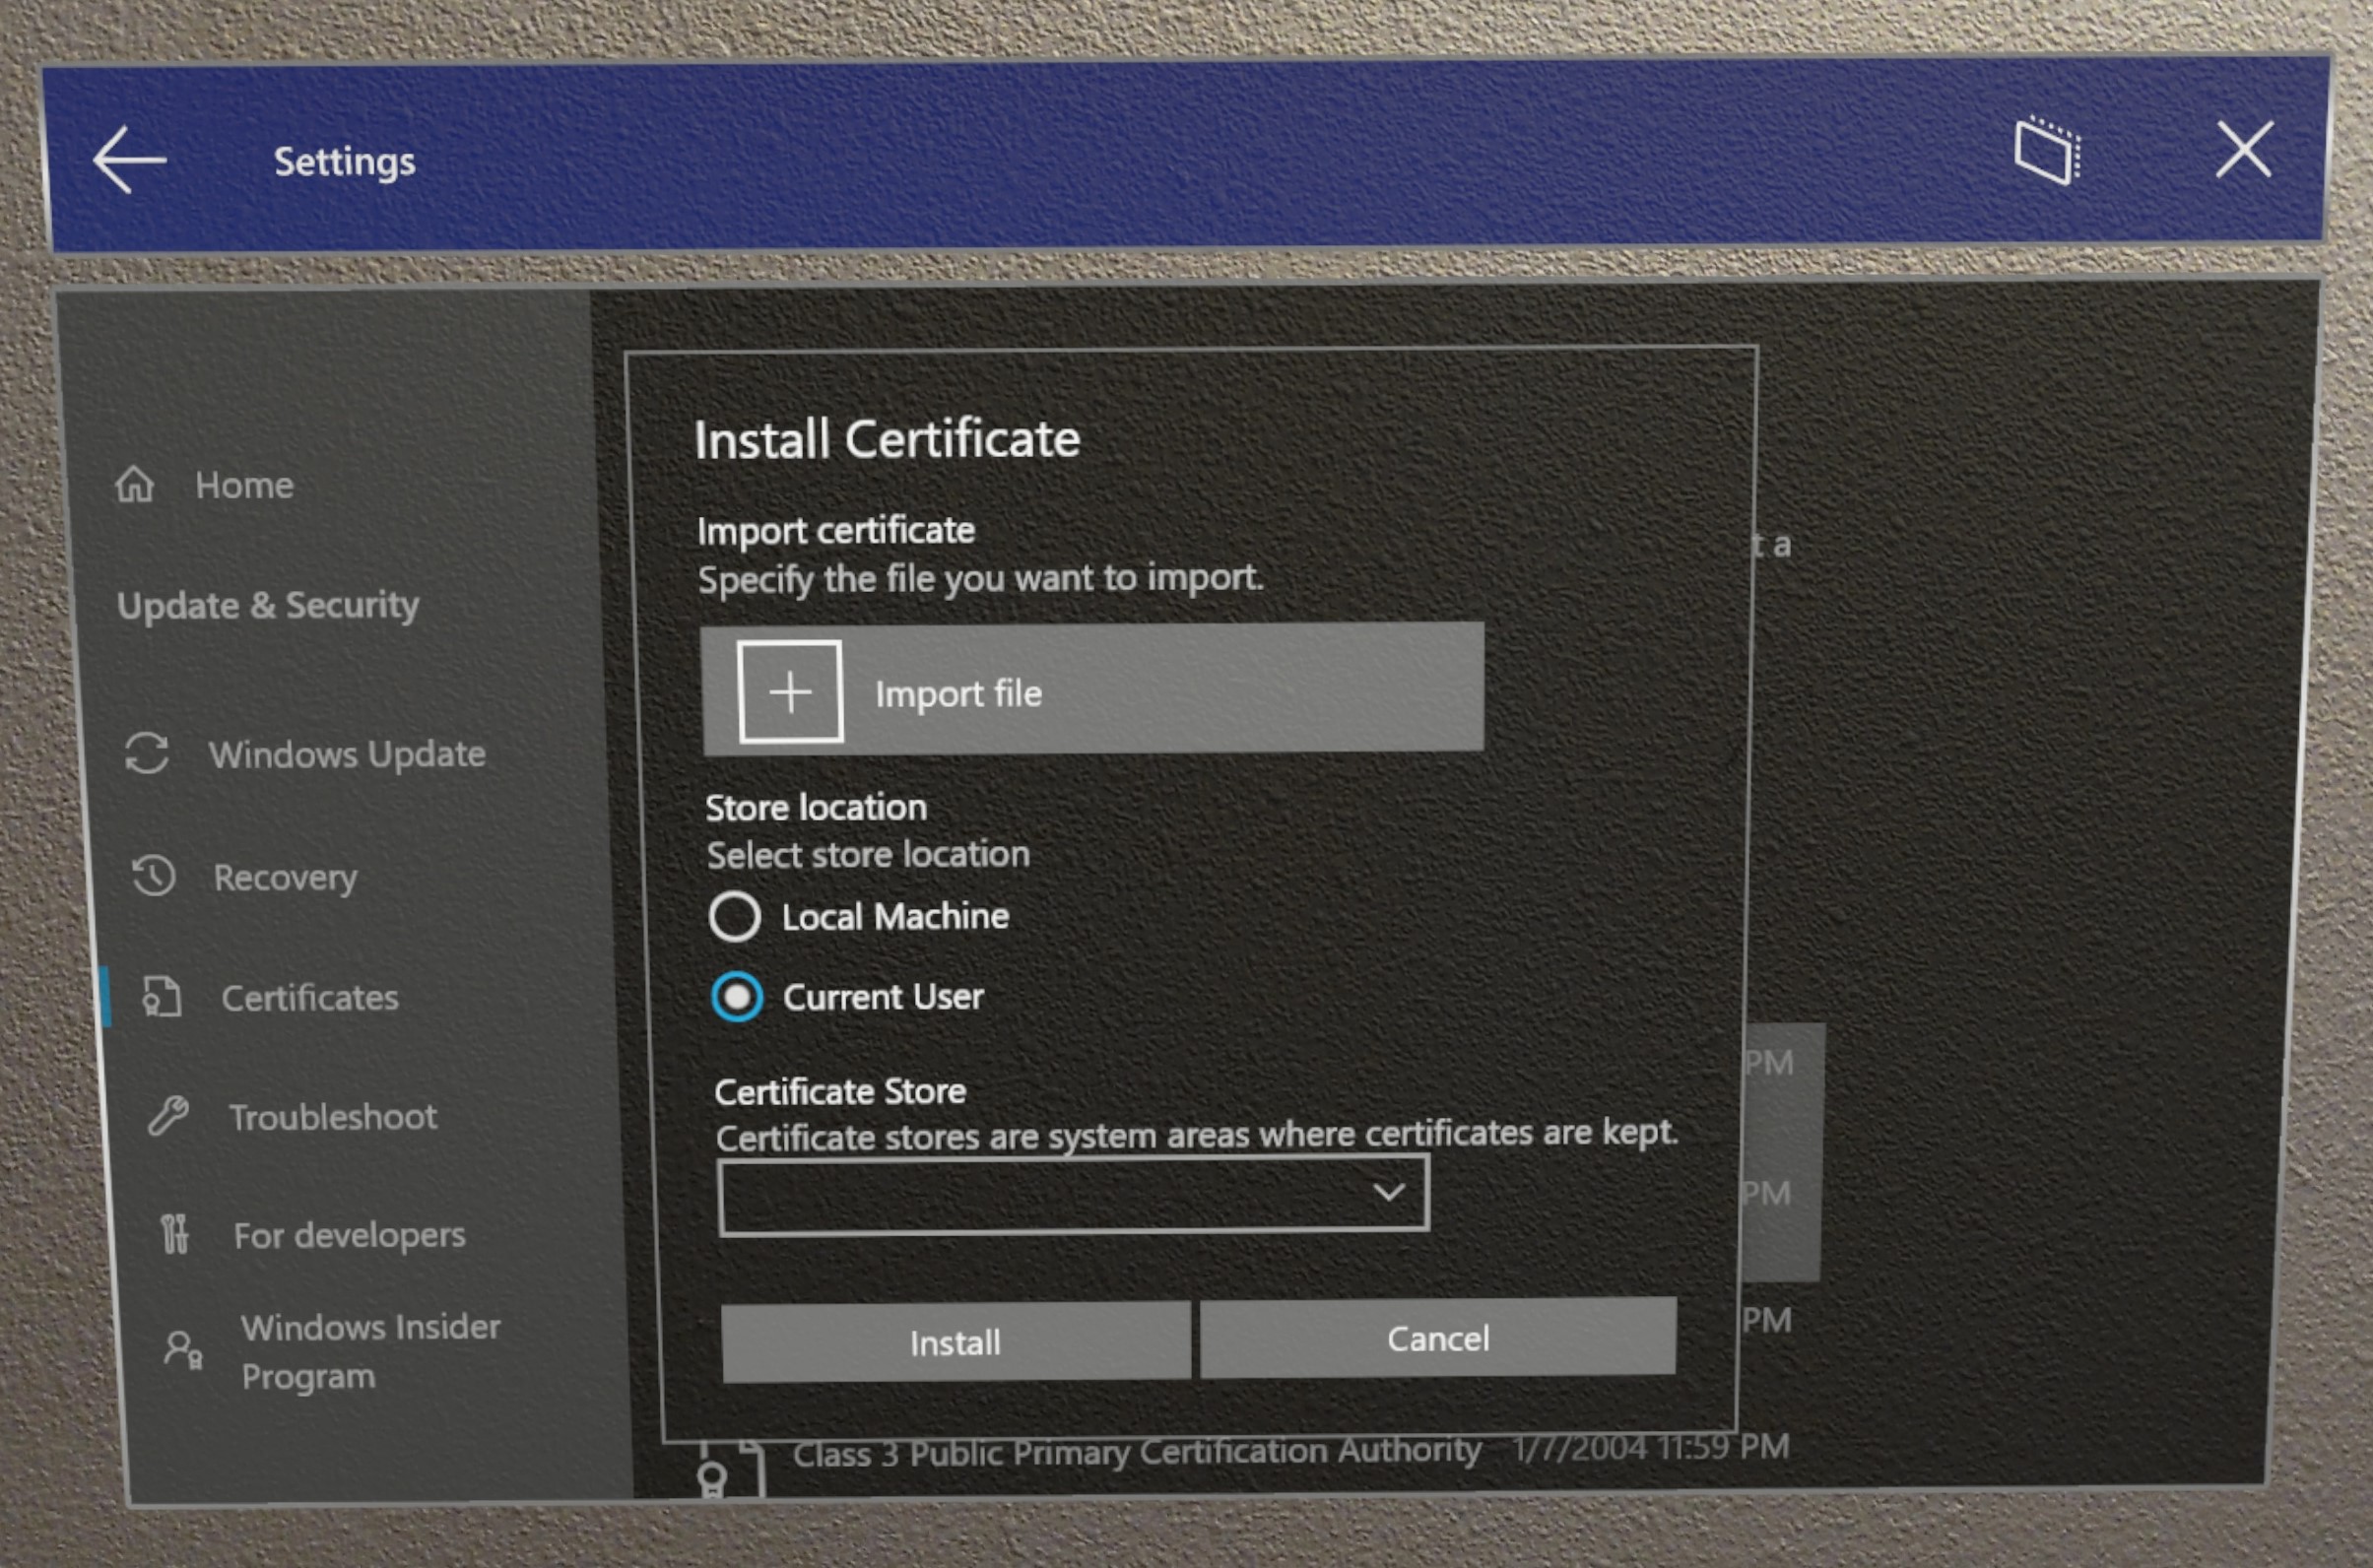 Afbeelding die laat zien hoe u de certificaatinterface gebruikt om een certificaat te installeren in Instellingen.